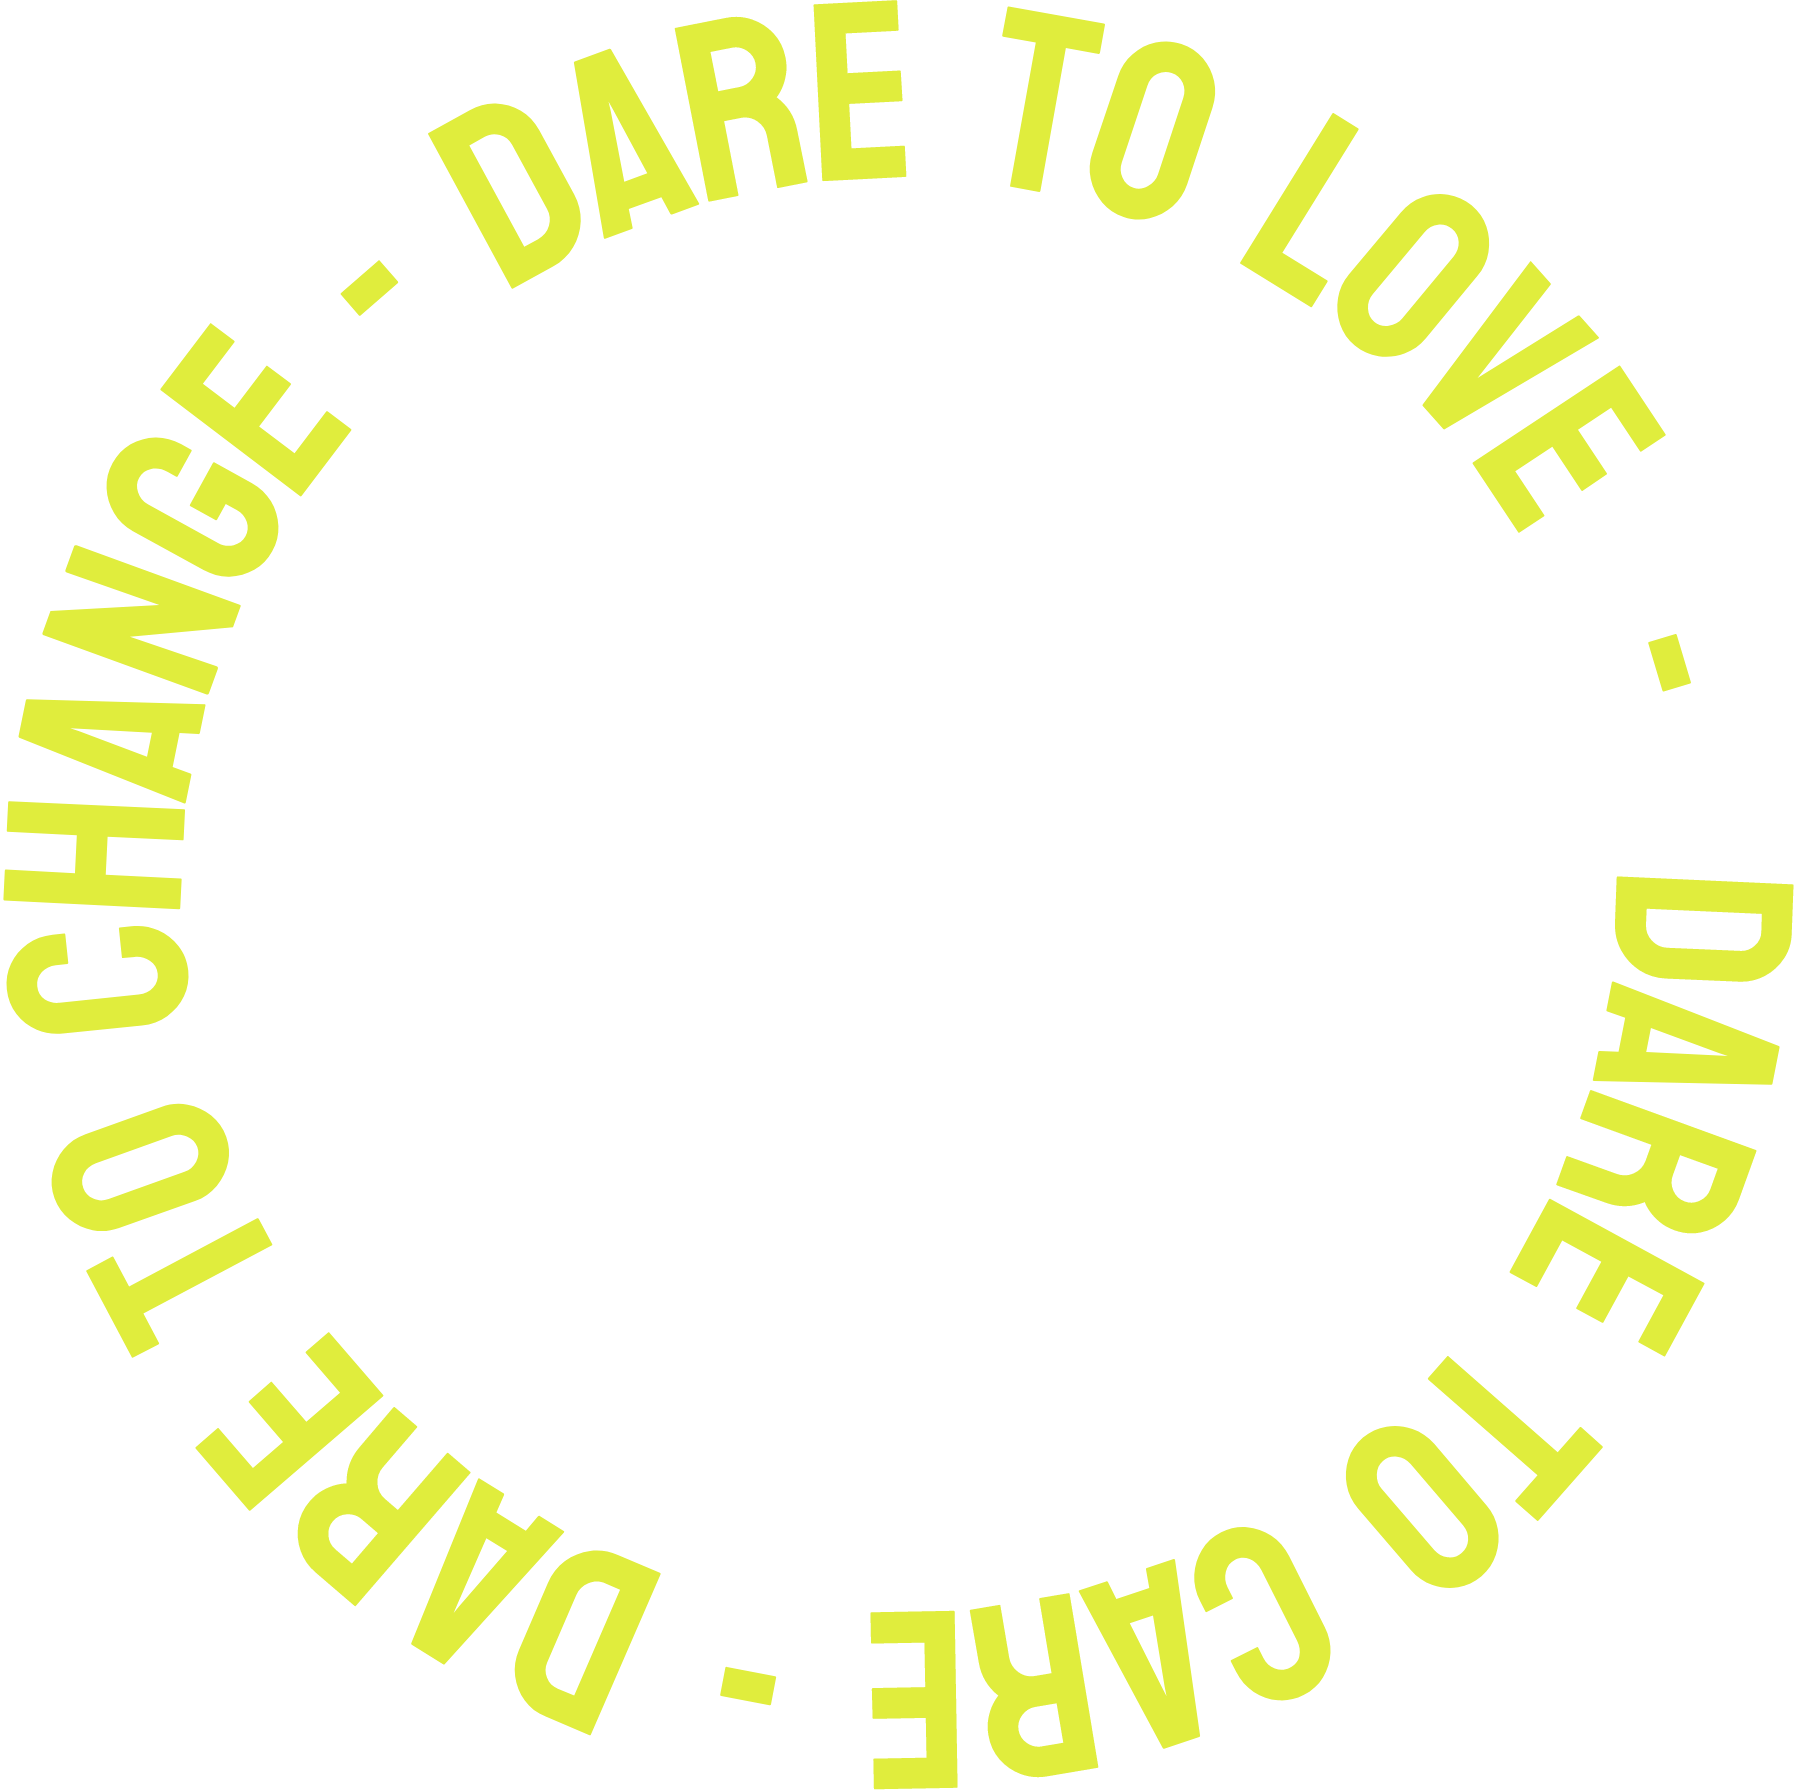 Dare to love. Dare to care. Dare to change.